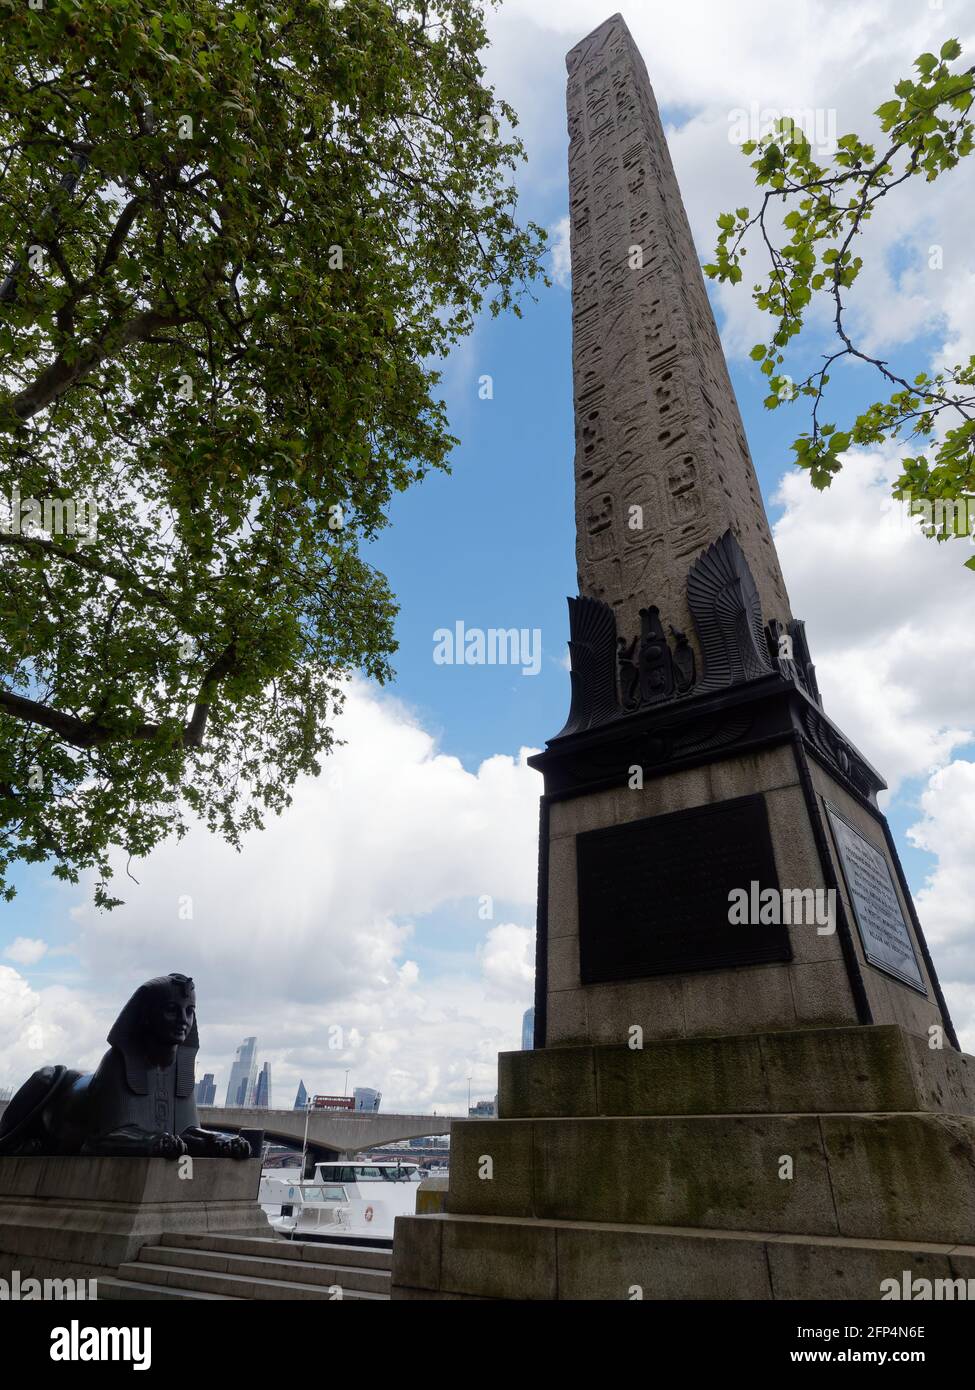 London, Greater London, England - 18 2021. Mai: Cleopatras Needle, ein Eqyption Obelisk und eine bronzene Spinx-Statue in der Nähe von Embankment Gardens. Stockfoto